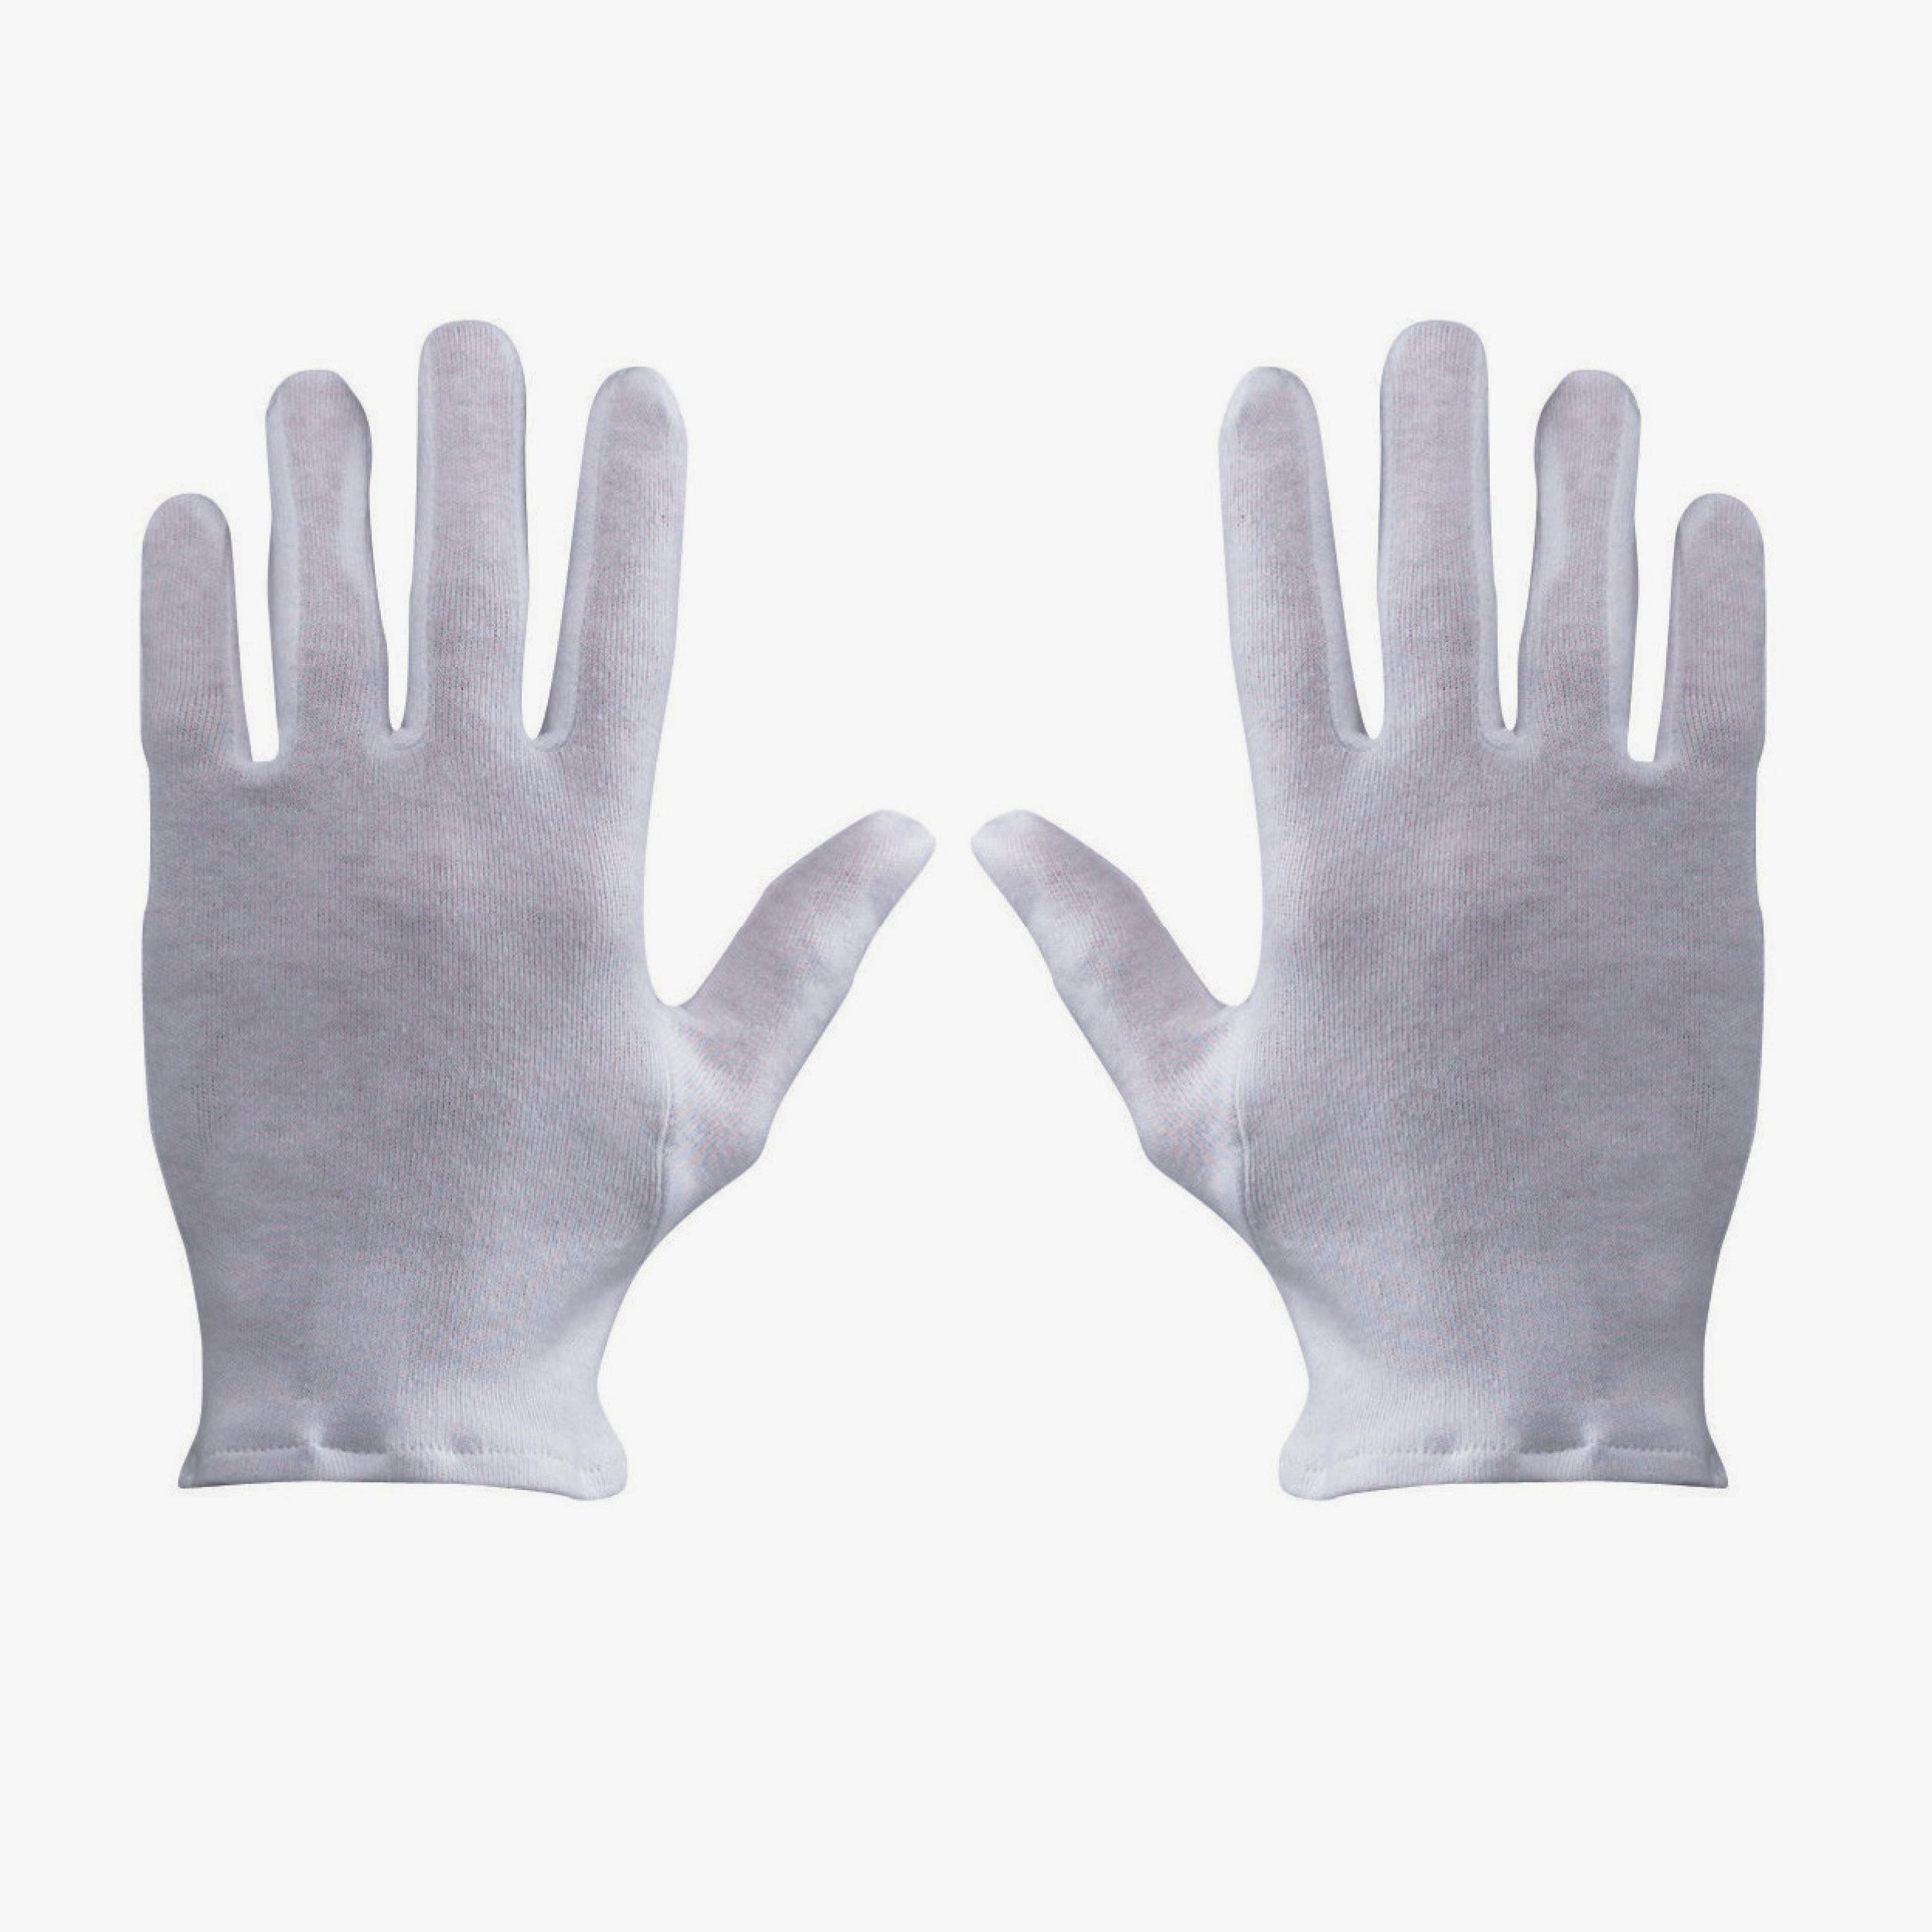 White cotton knit gloves 335026 - 12pcs